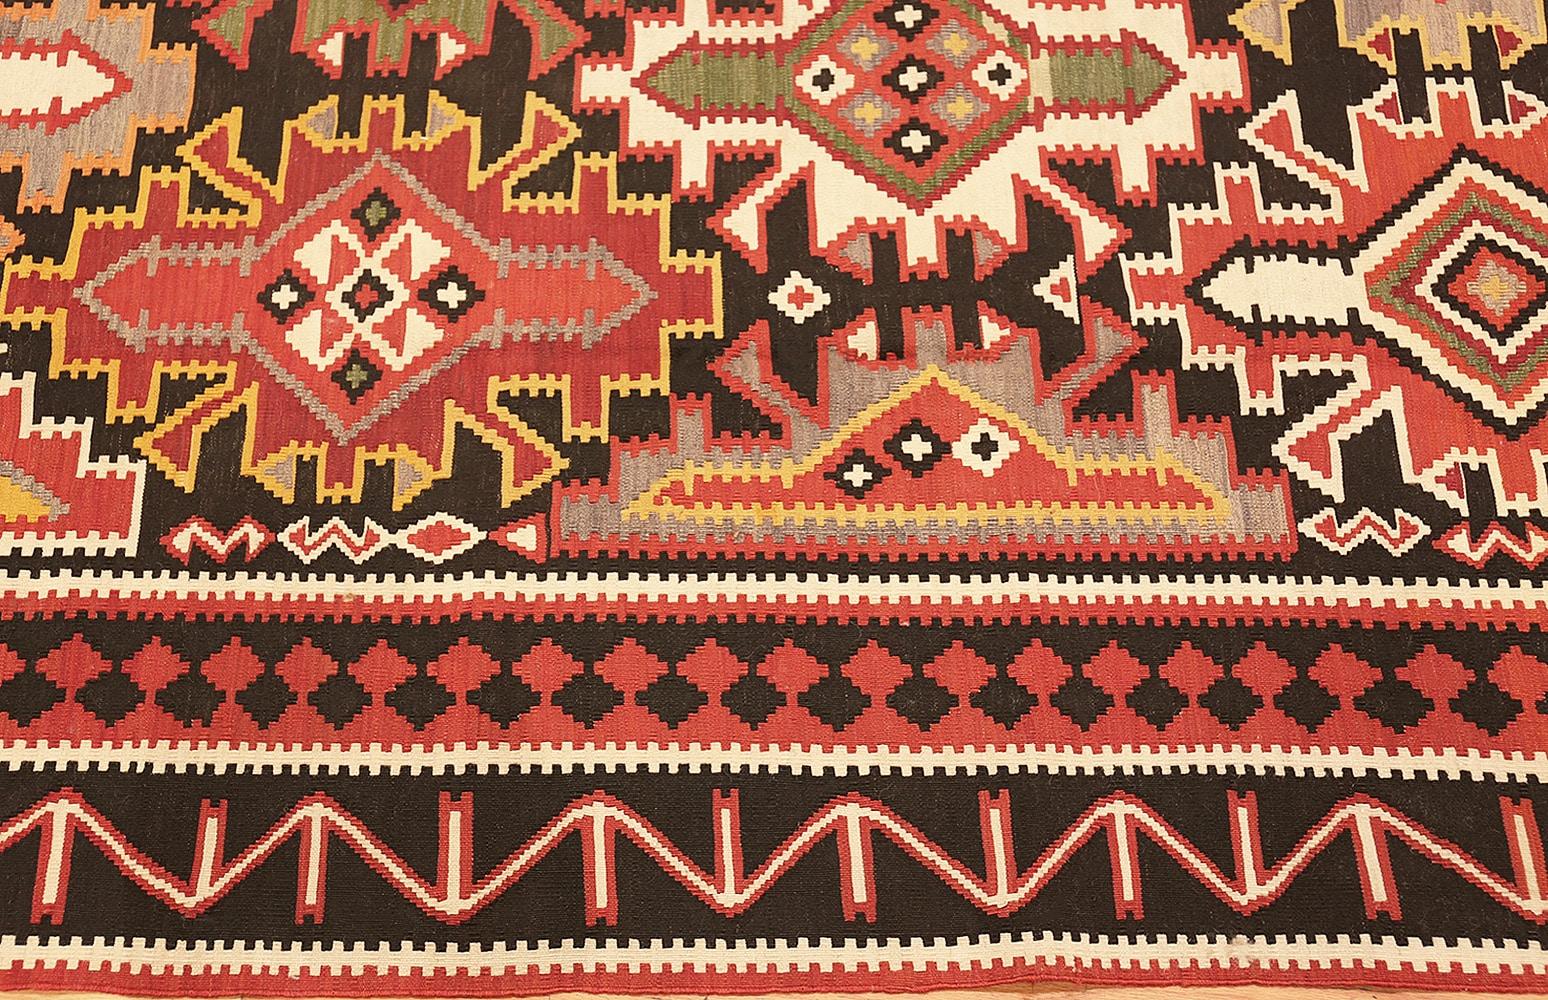 Vintage Caucasian Kilim rug, country of origin: Caucasus, date circa mid-20th century. Size: 6 ft x 11 ft 9 in (1.83 m x 3.58 m). 